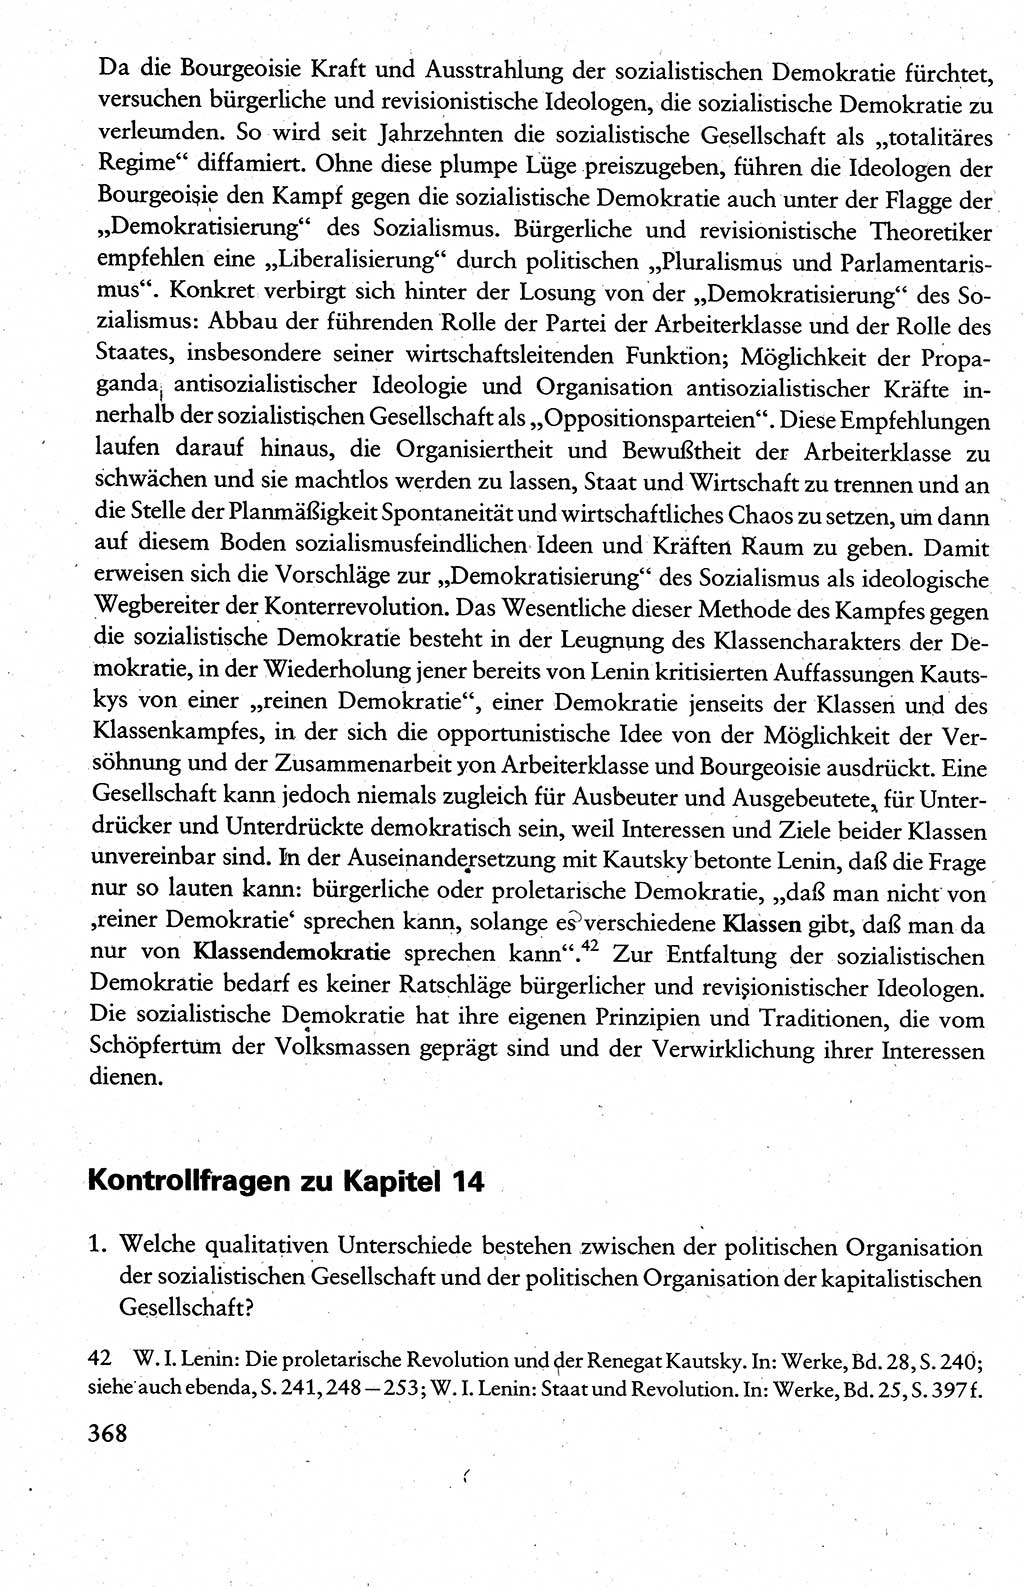 Wissenschaftlicher Kommunismus [Deutsche Demokratische Republik (DDR)], Lehrbuch für das marxistisch-leninistische Grundlagenstudium 1983, Seite 368 (Wiss. Komm. DDR Lb. 1983, S. 368)